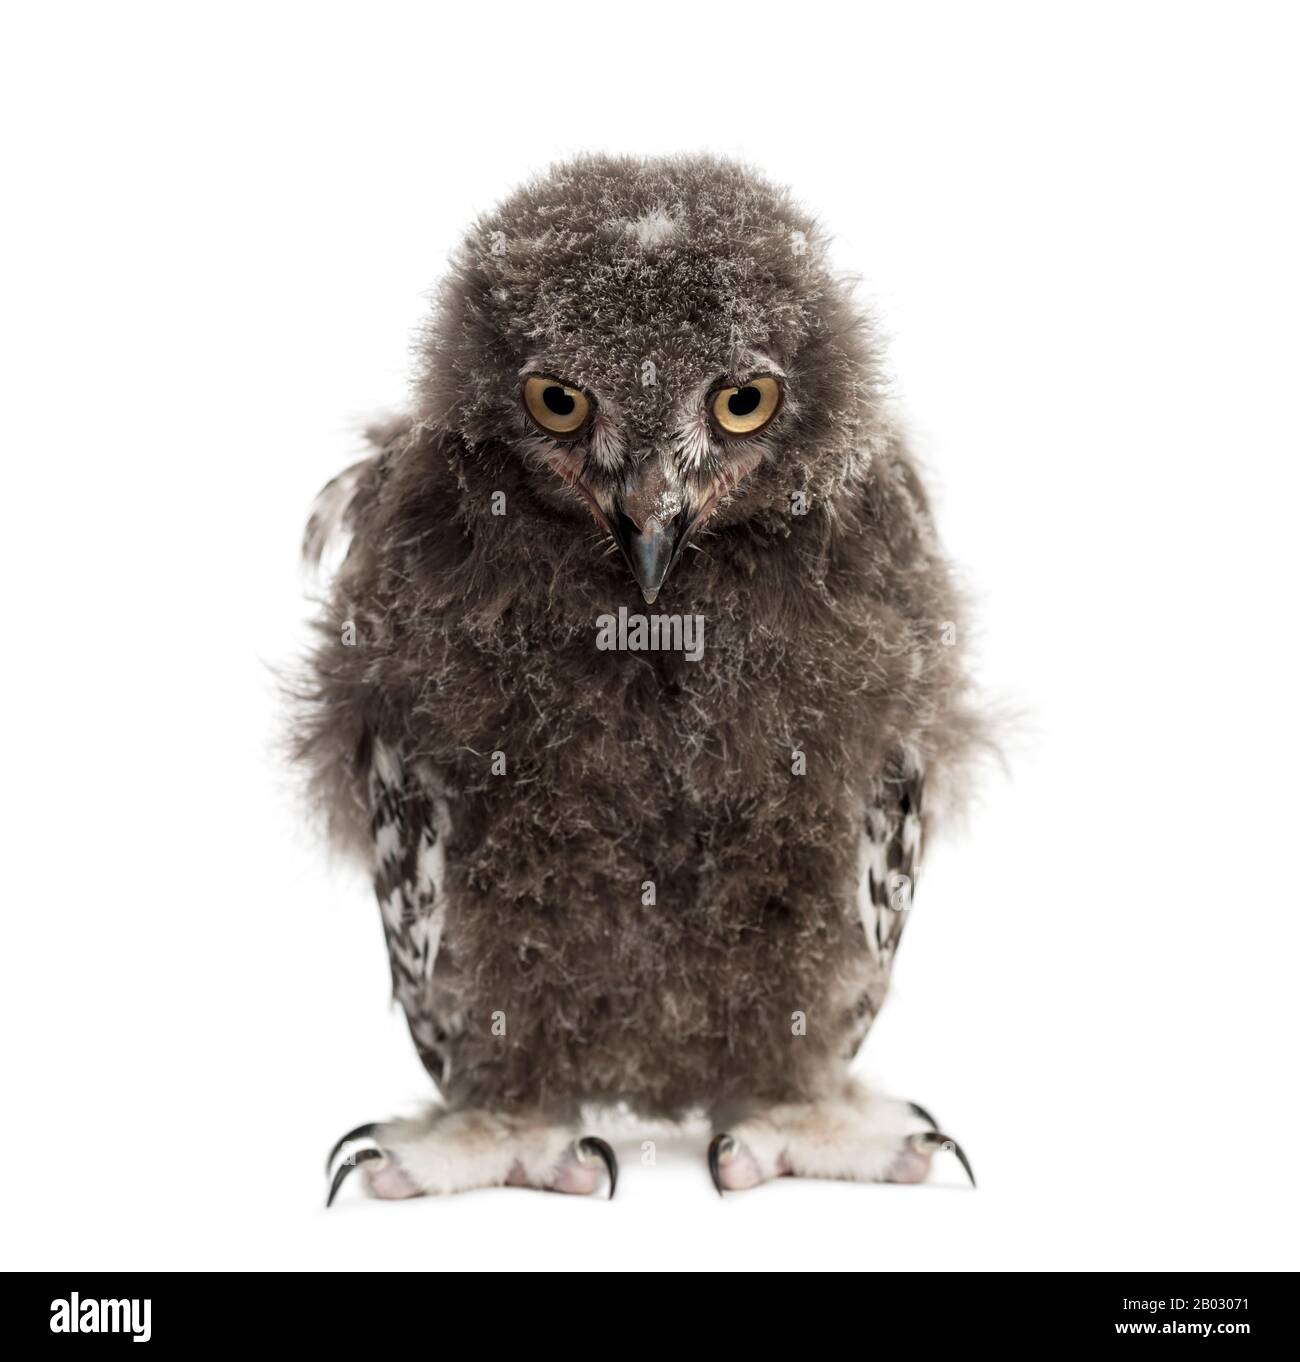 Snowy owl, Bubo scandiacus, 40 days Stock Photo